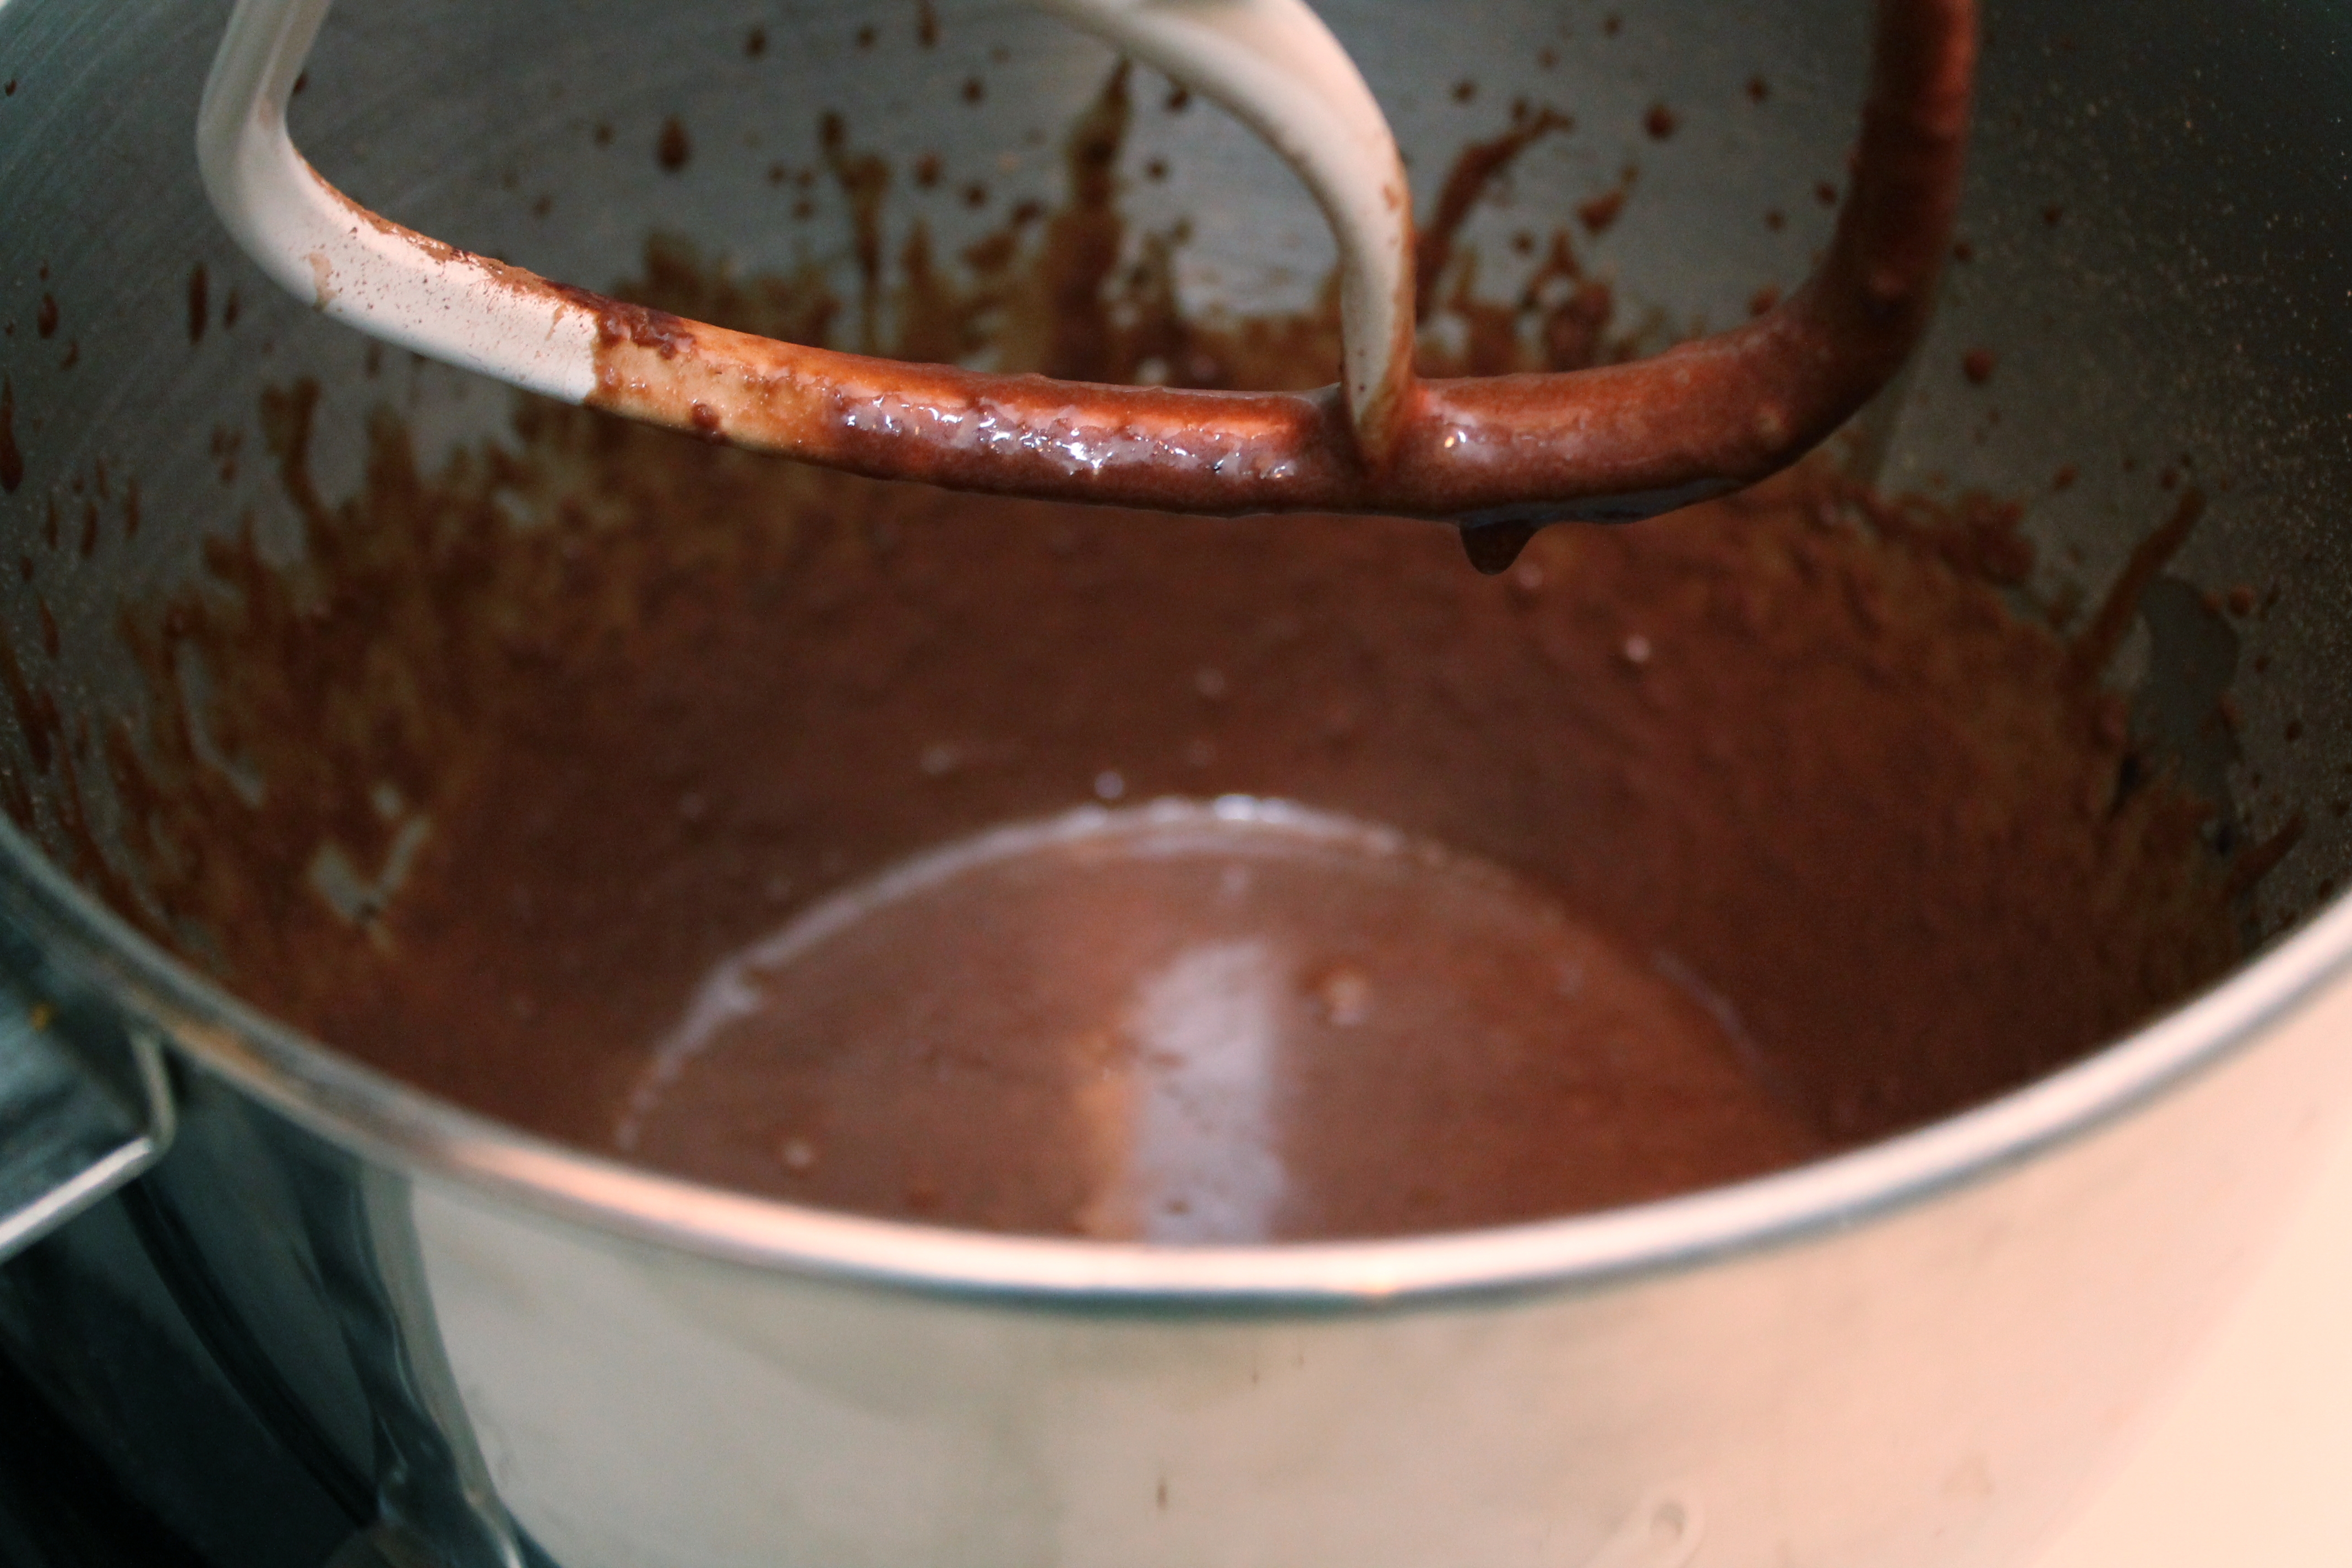 Applesauce-Cocoa Mixture